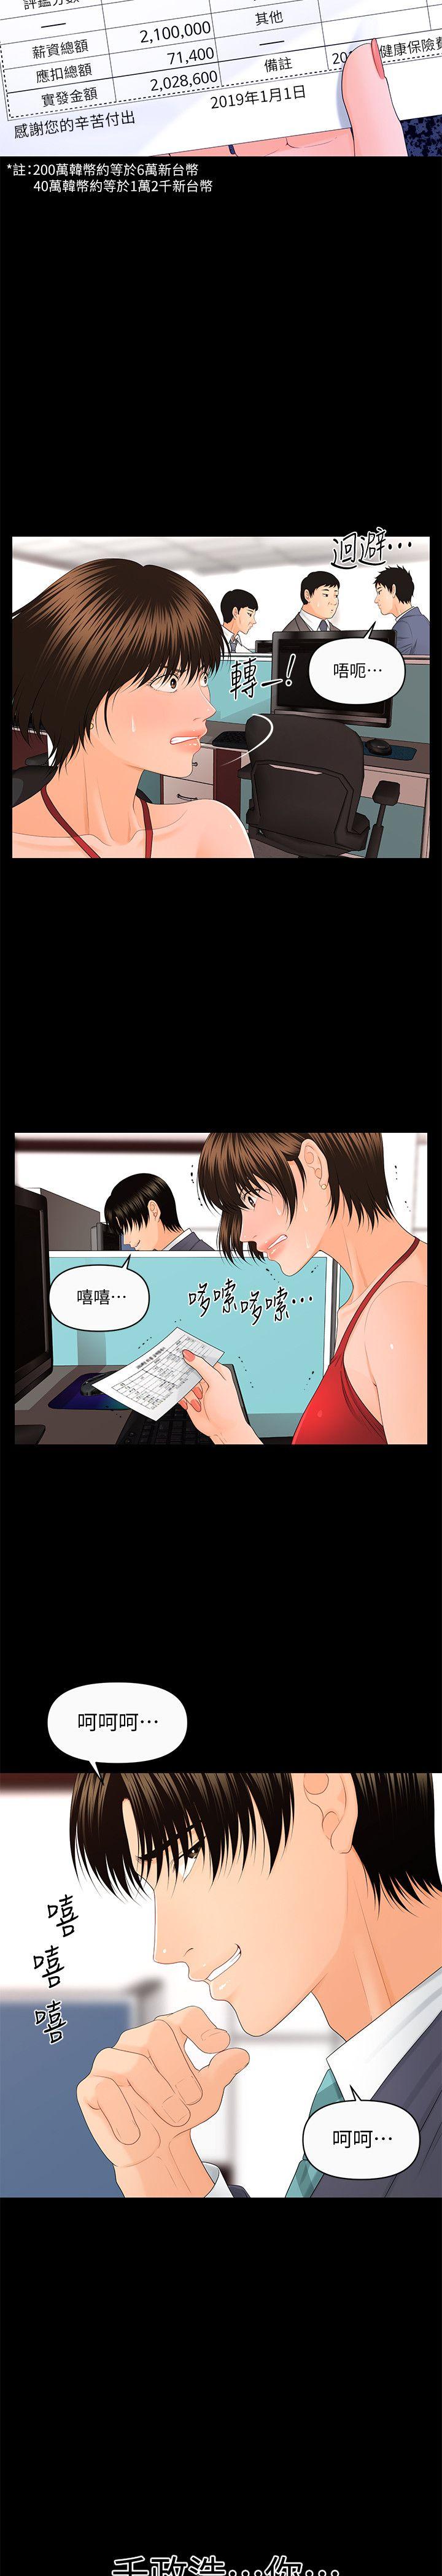 韩国污漫画 秘書的潛規則 第12话-年经女性的滋味 2